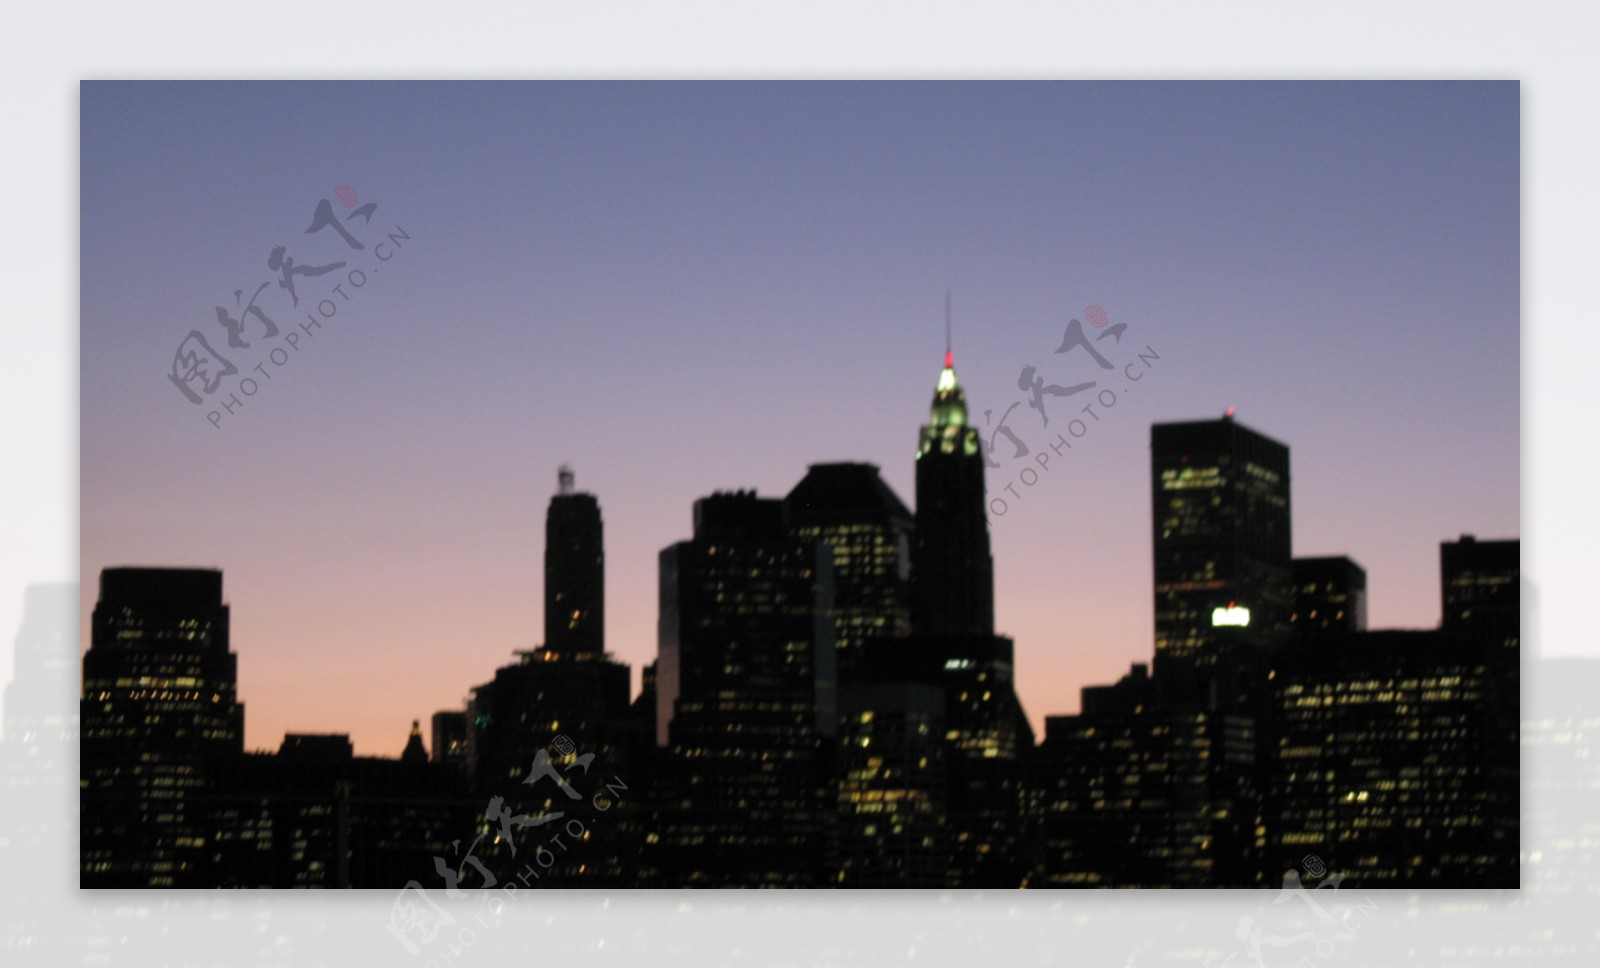 曼哈顿夜景图片